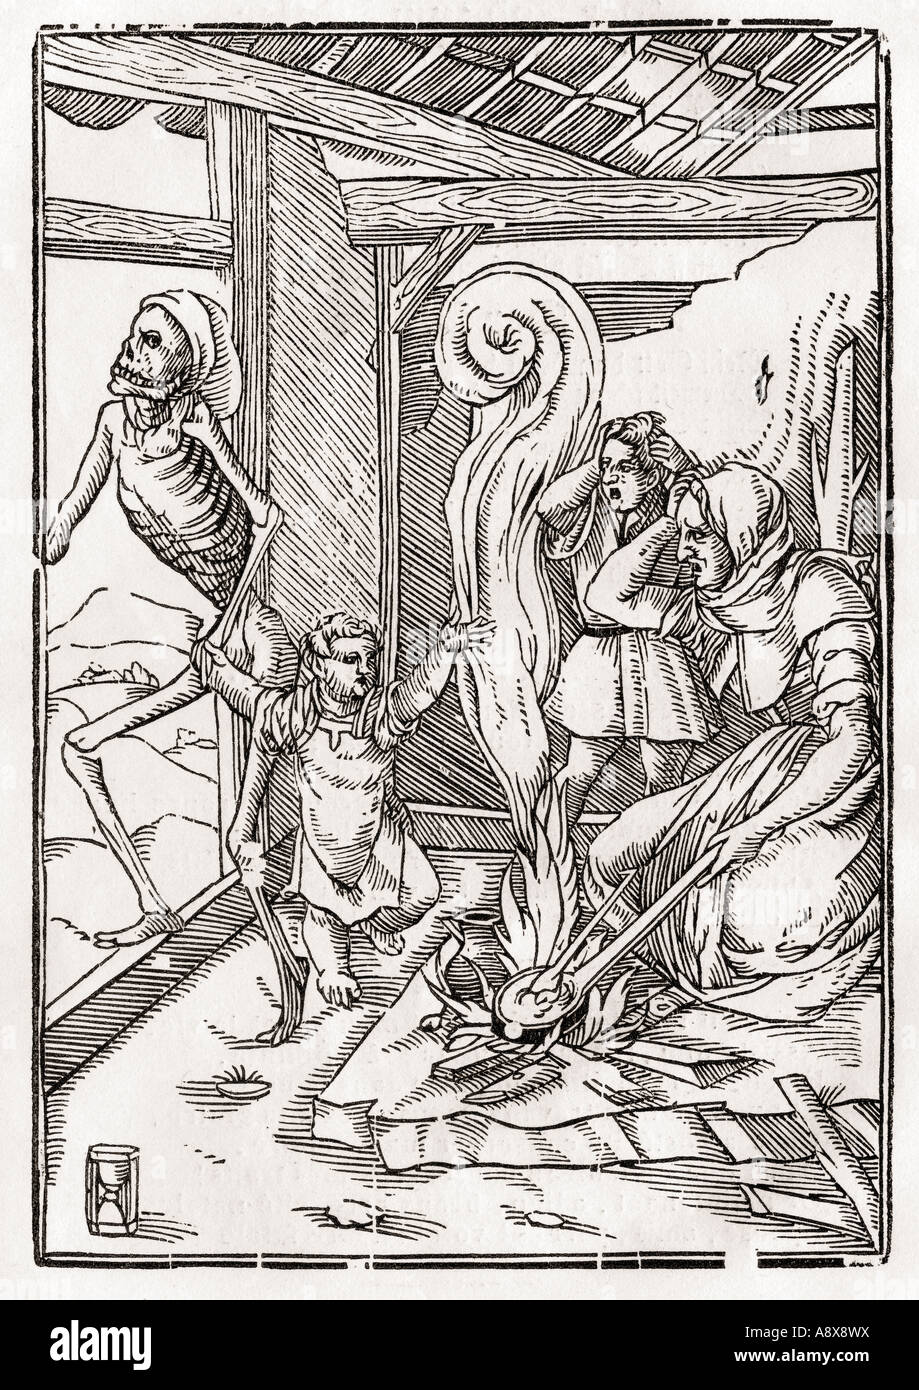 La muerte viene para el Niño. Después de Hans Holbein el joven. De der Todten Tanz o la Danza de la muerte, publicado Basilea, 1843. Foto de stock